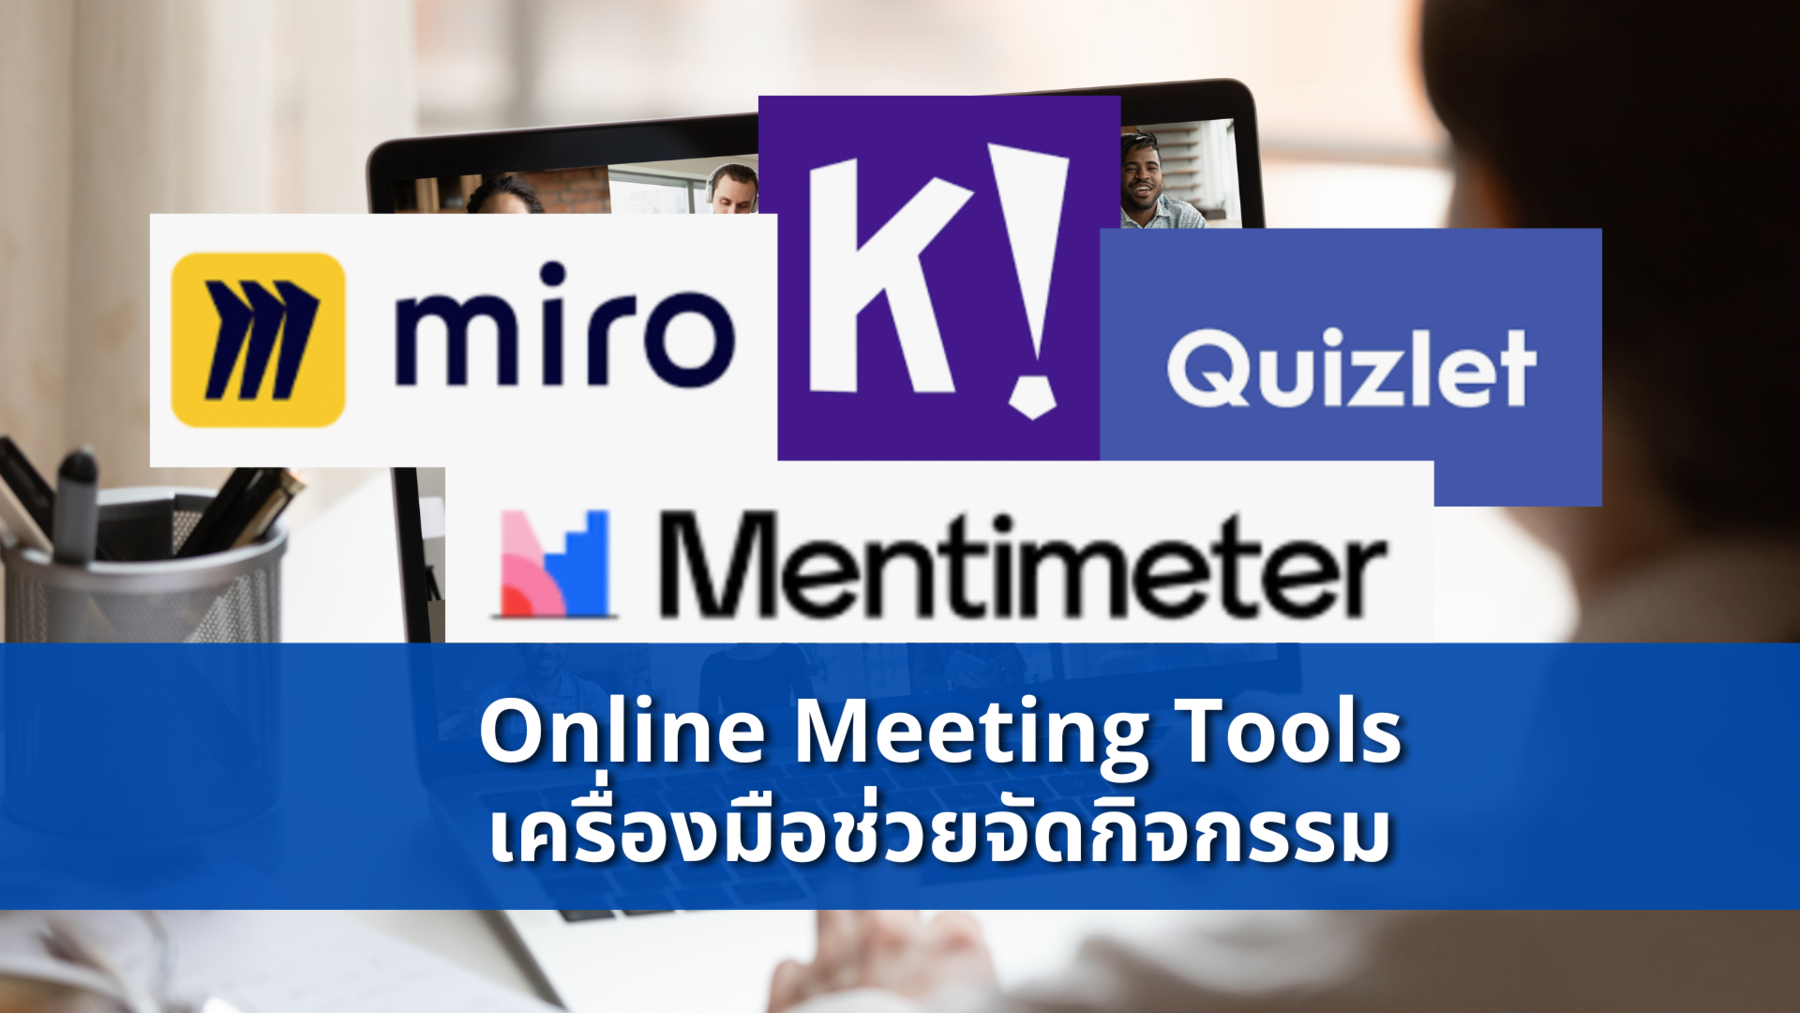 Online meeting tools